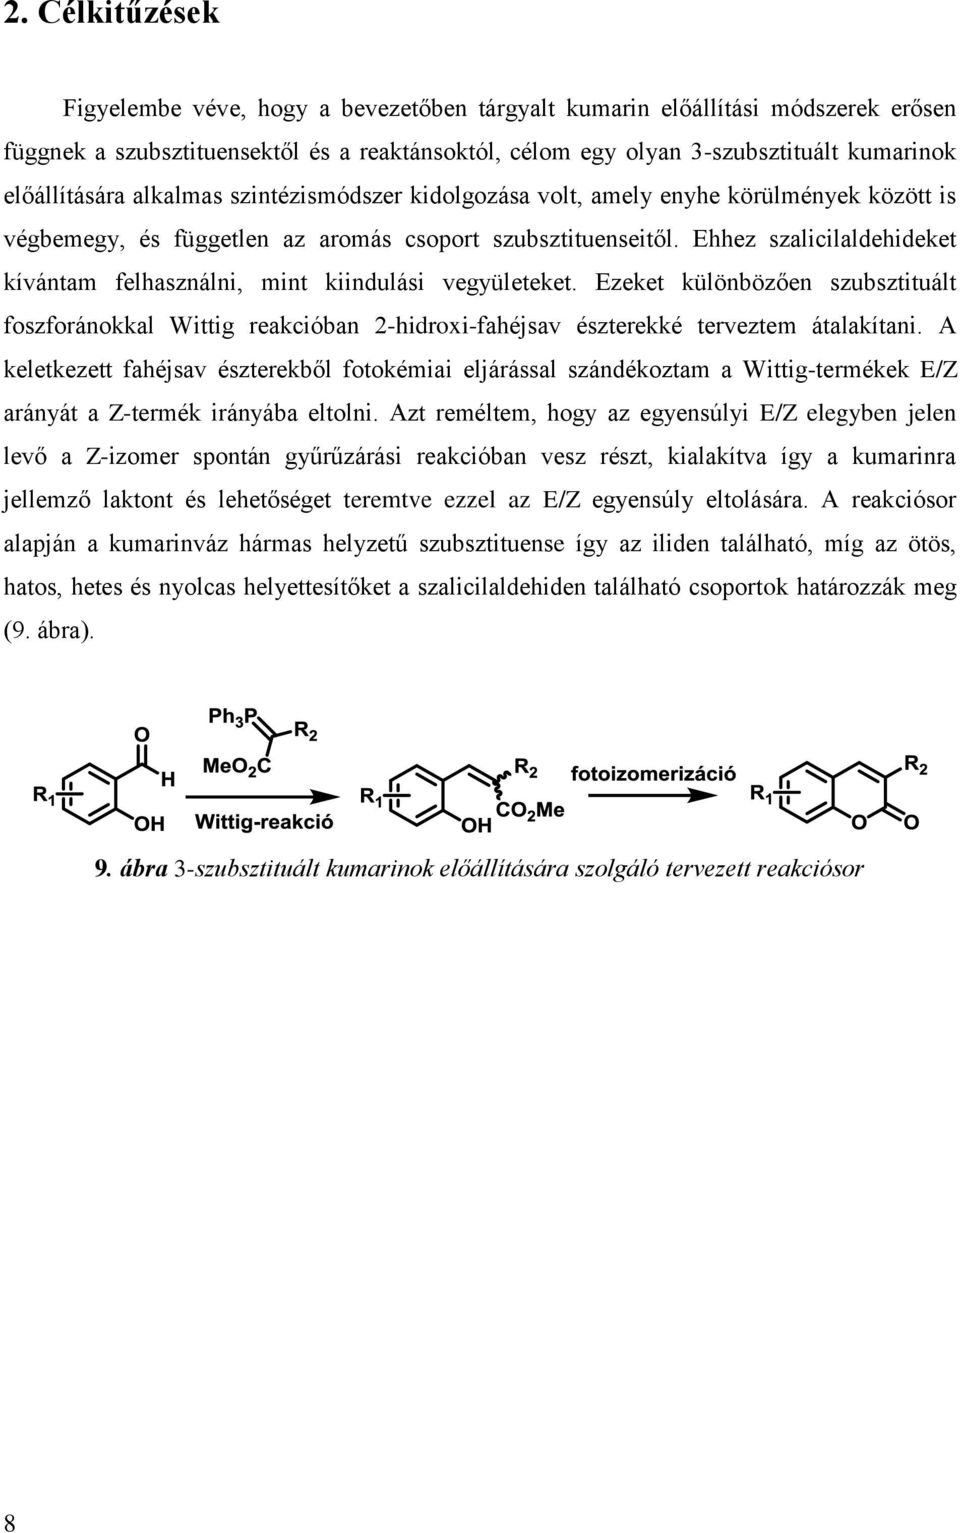 Ehhez szalicilaldehideket kívántam felhasználni, mint kiindulási vegyületeket. Ezeket különbözően szubsztituált foszforánokkal Wittig reakcióban 2-hidroxi-fahéjsav észterekké terveztem átalakítani.